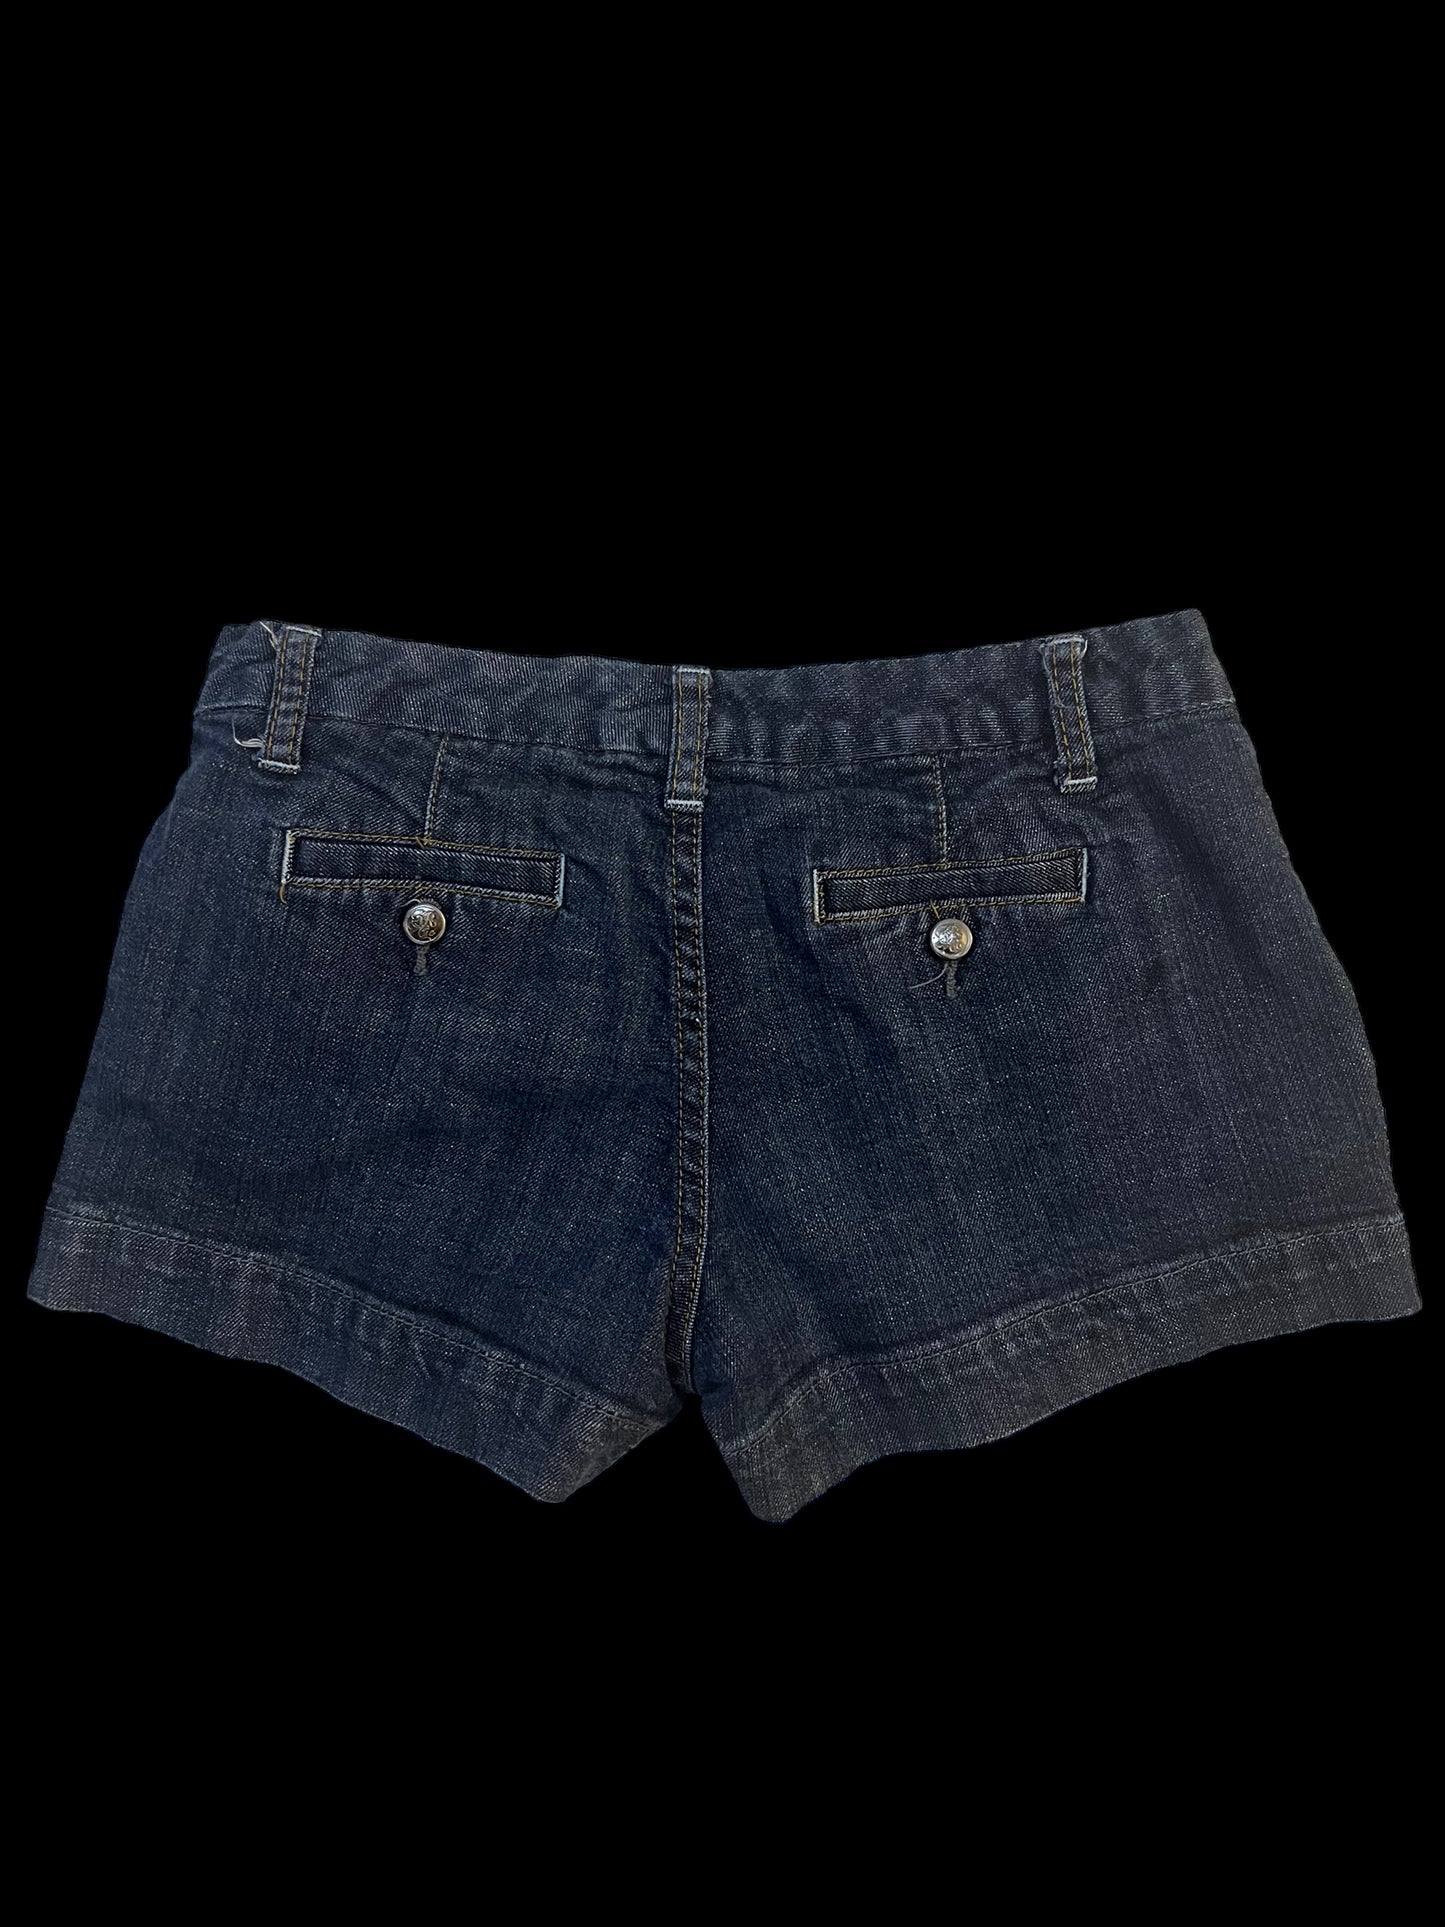 Navy jean shorts